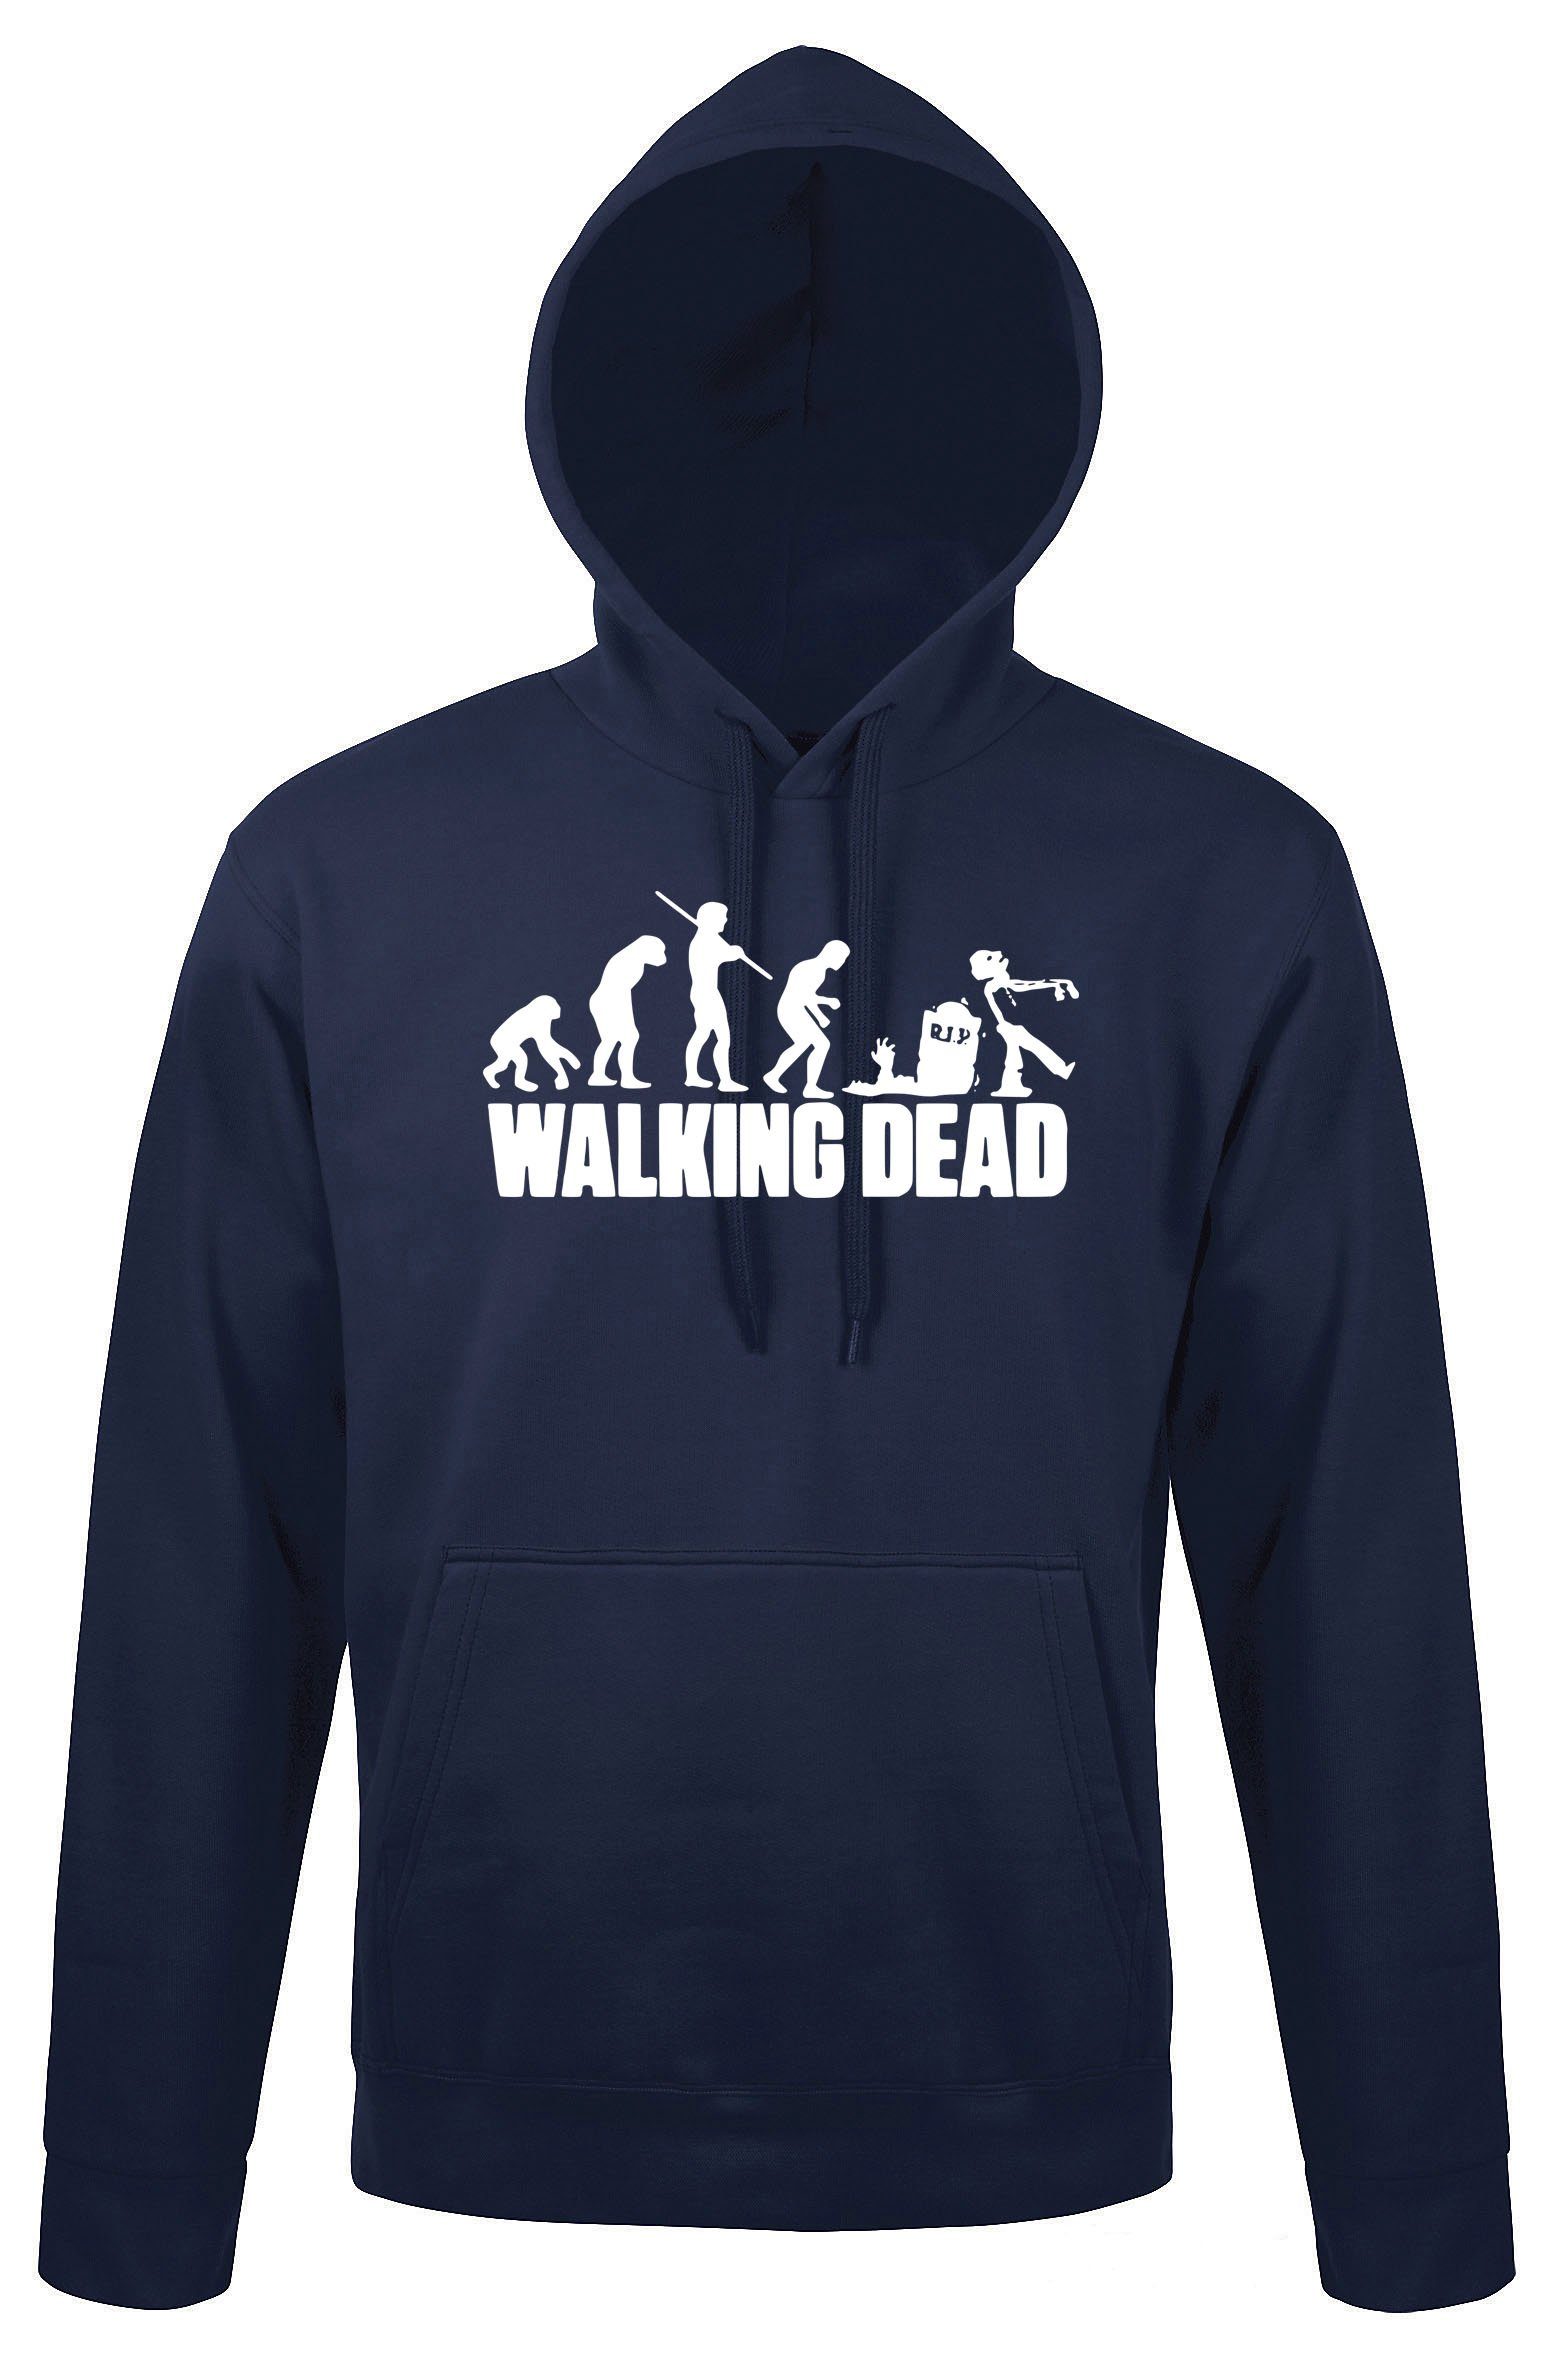 Walking Herren Dead Serien Navyblau Kapuzenpullover Designz mit Hoodie trendigem Motiv Pullover Zombie Youth